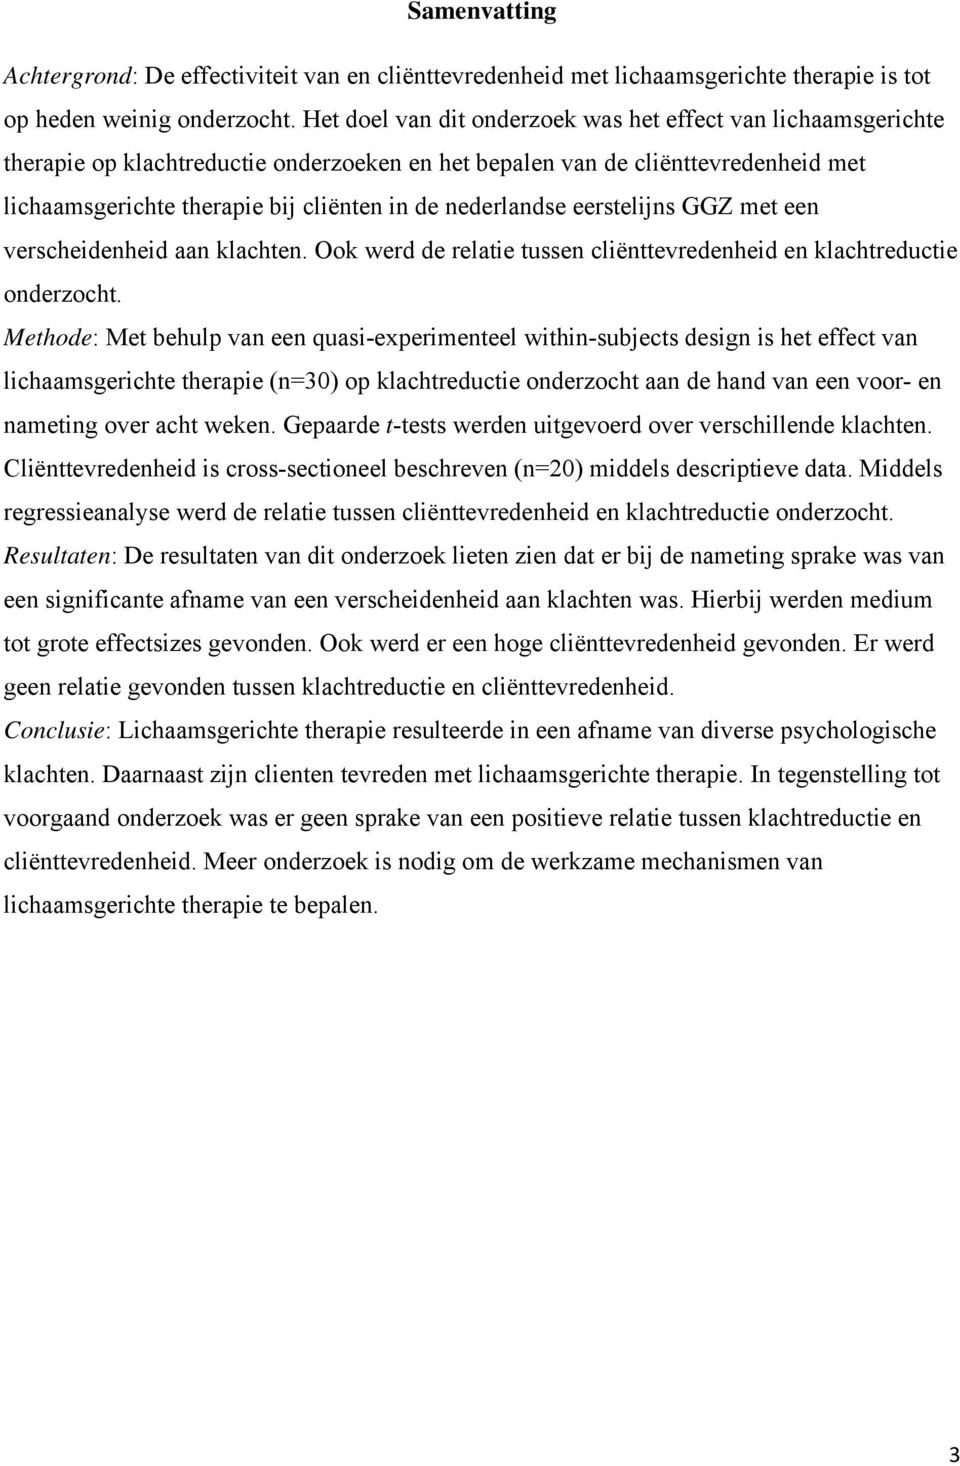 nederlandse eerstelijns GGZ met een verscheidenheid aan klachten. Ook werd de relatie tussen cliënttevredenheid en klachtreductie onderzocht.